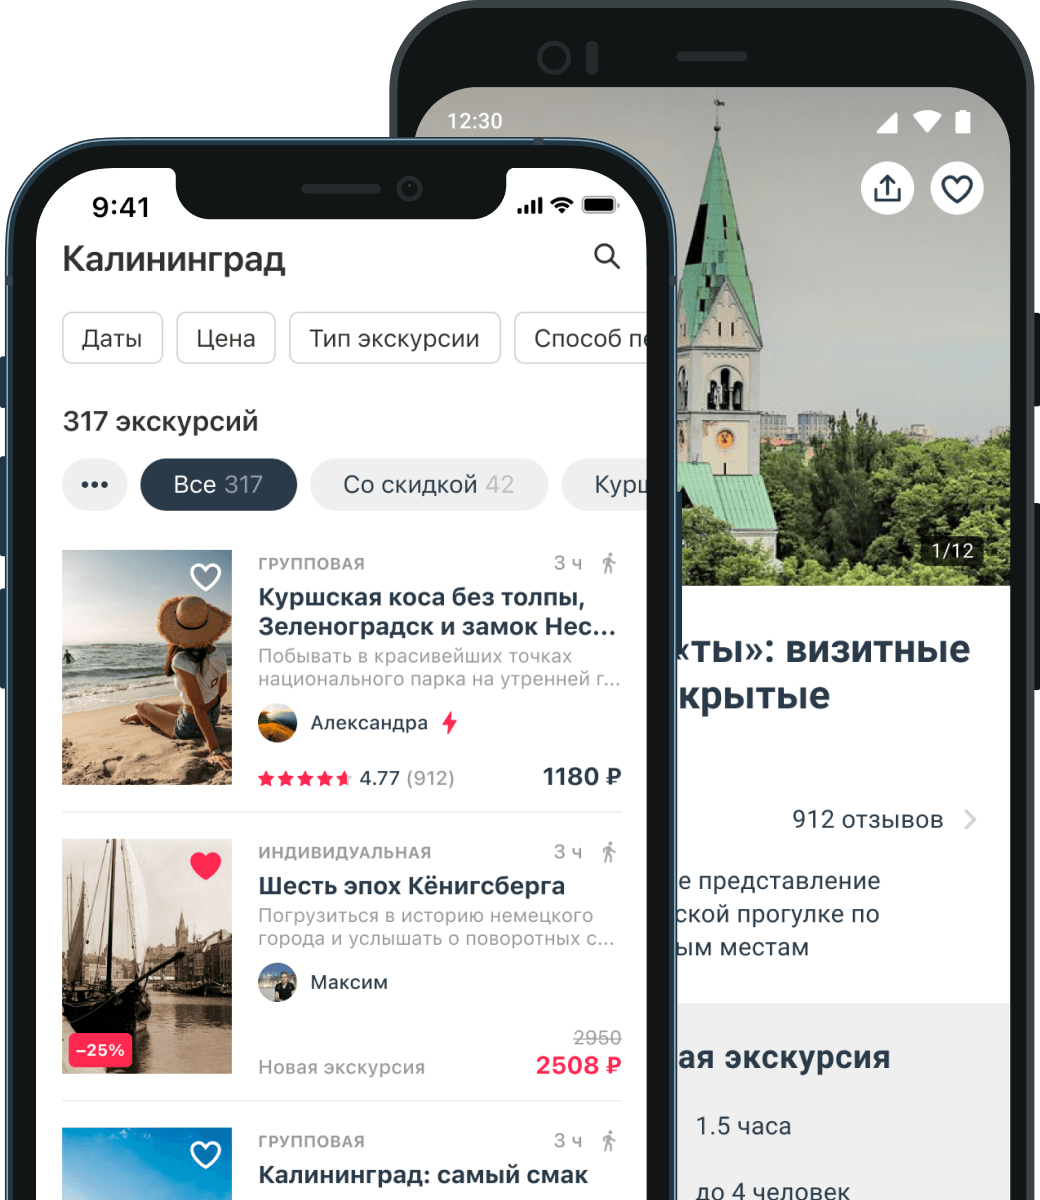 Купить экскурсии по России недорого, от 500 руб.